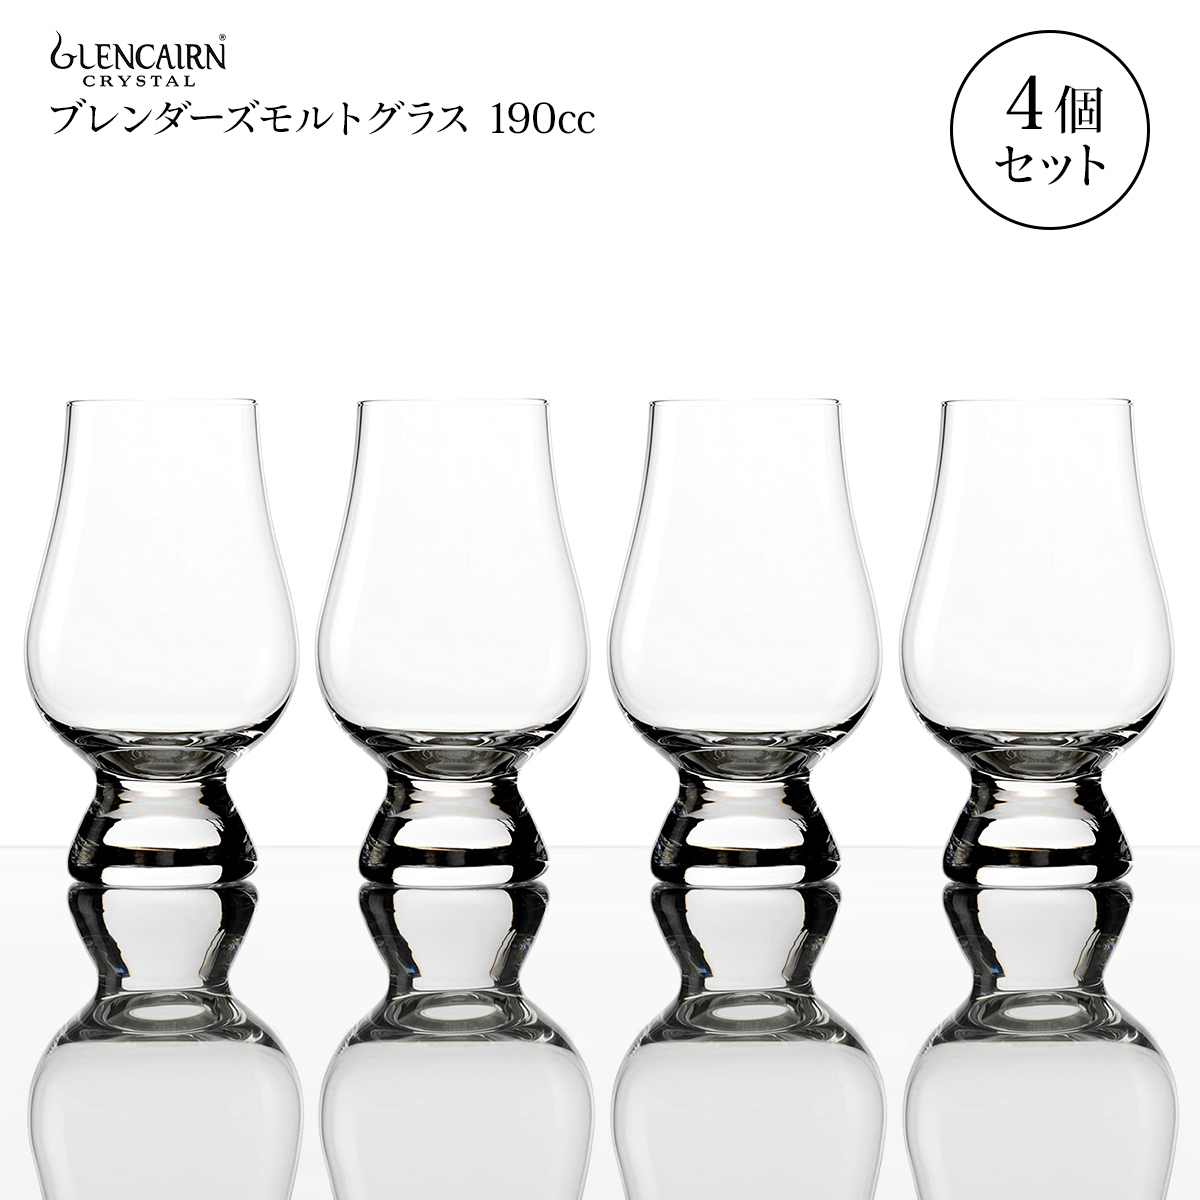 Glencean Blenders Glass 190cc 4 куски виски стеклянная роскошная пара солодовые стеклянные стекло стекло стекло